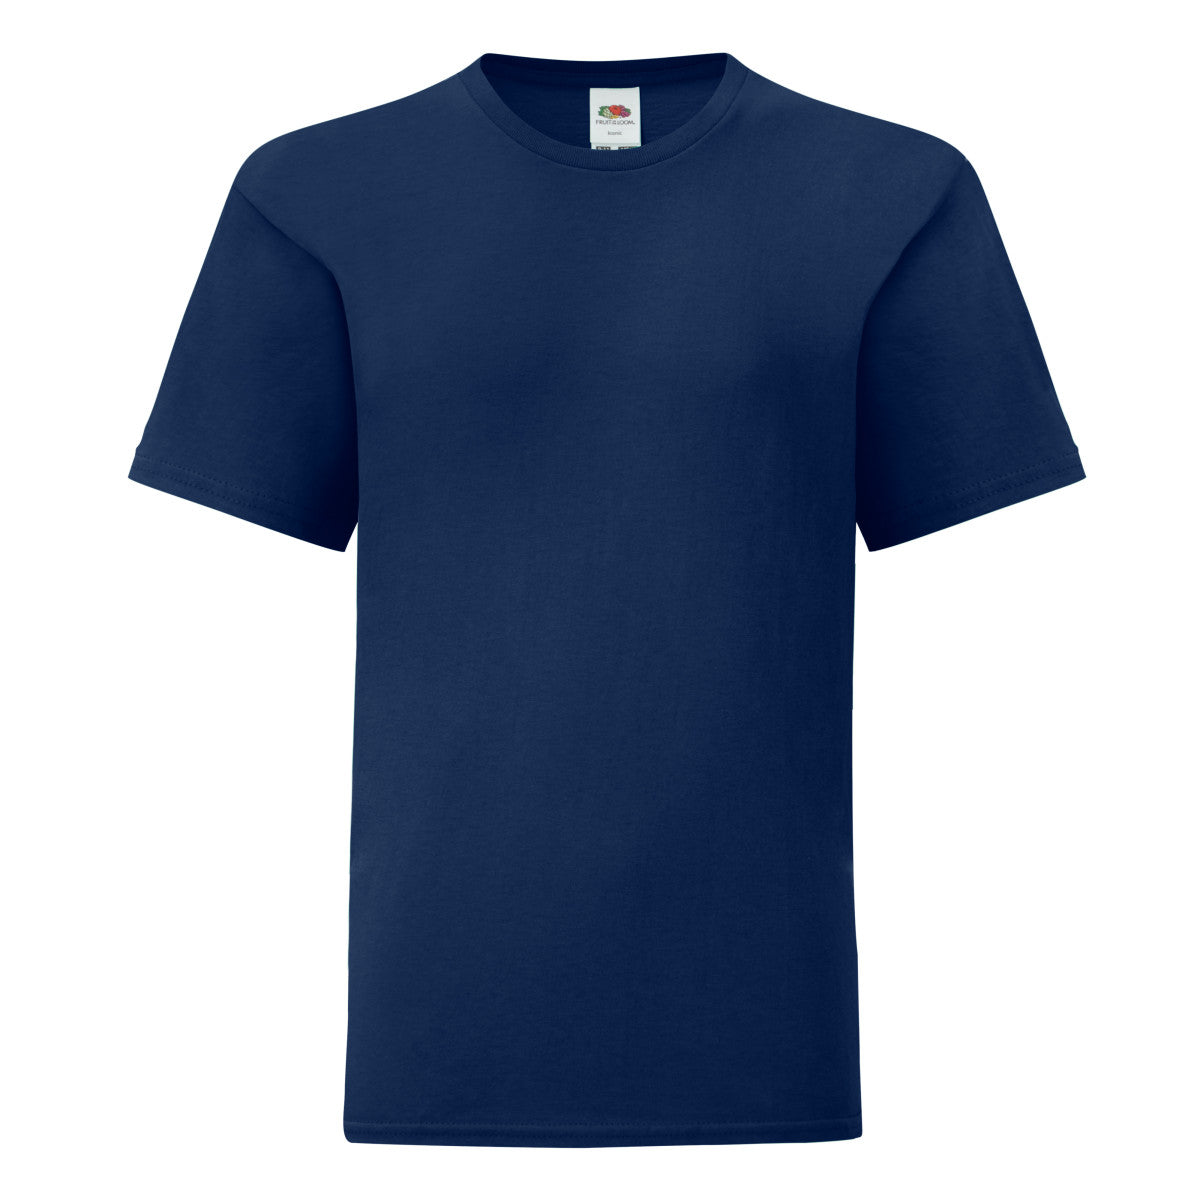 Navy Kids T-Shirt